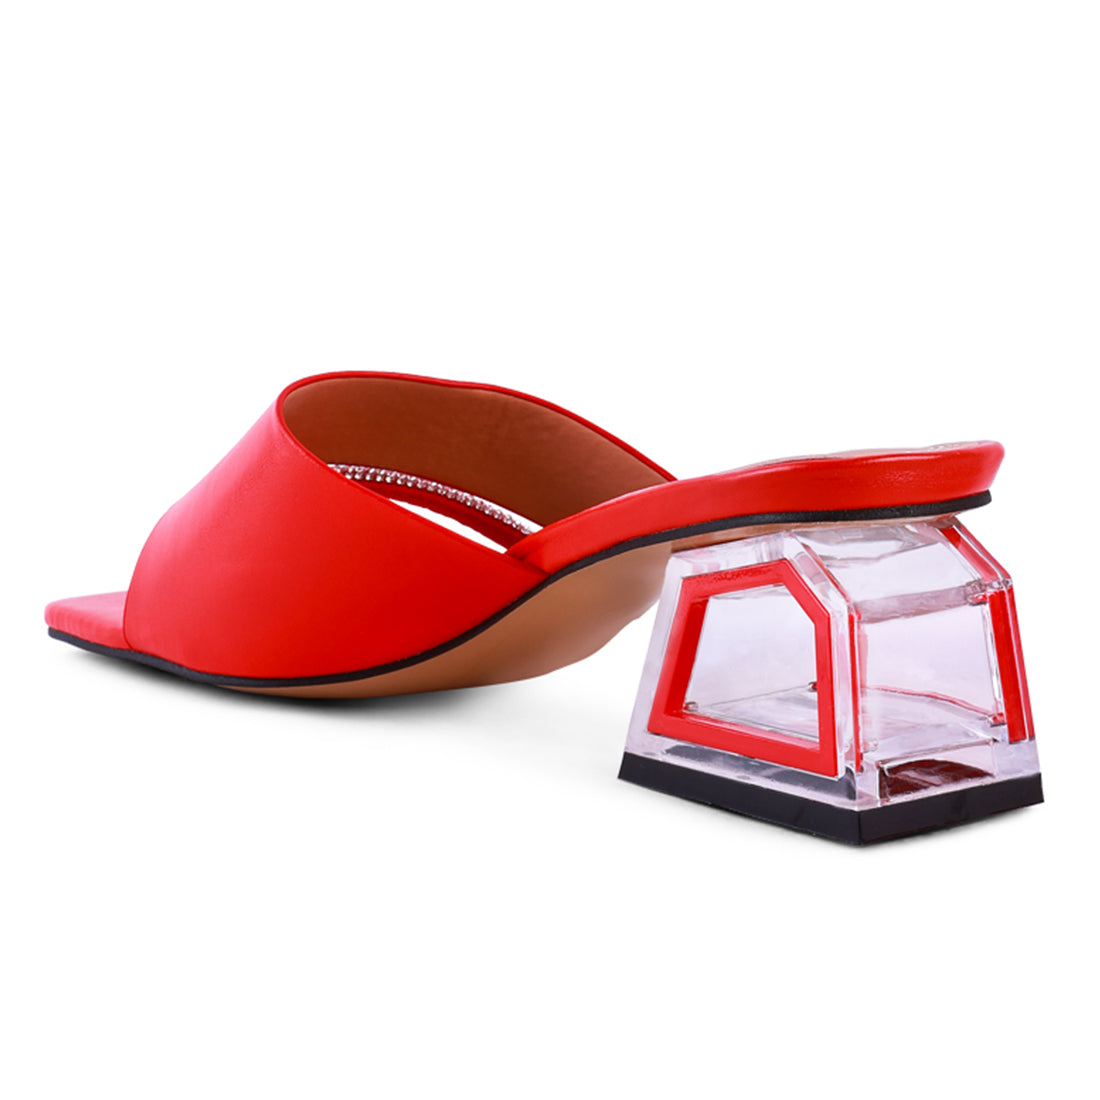 Red Minimal Low Heel Sandals